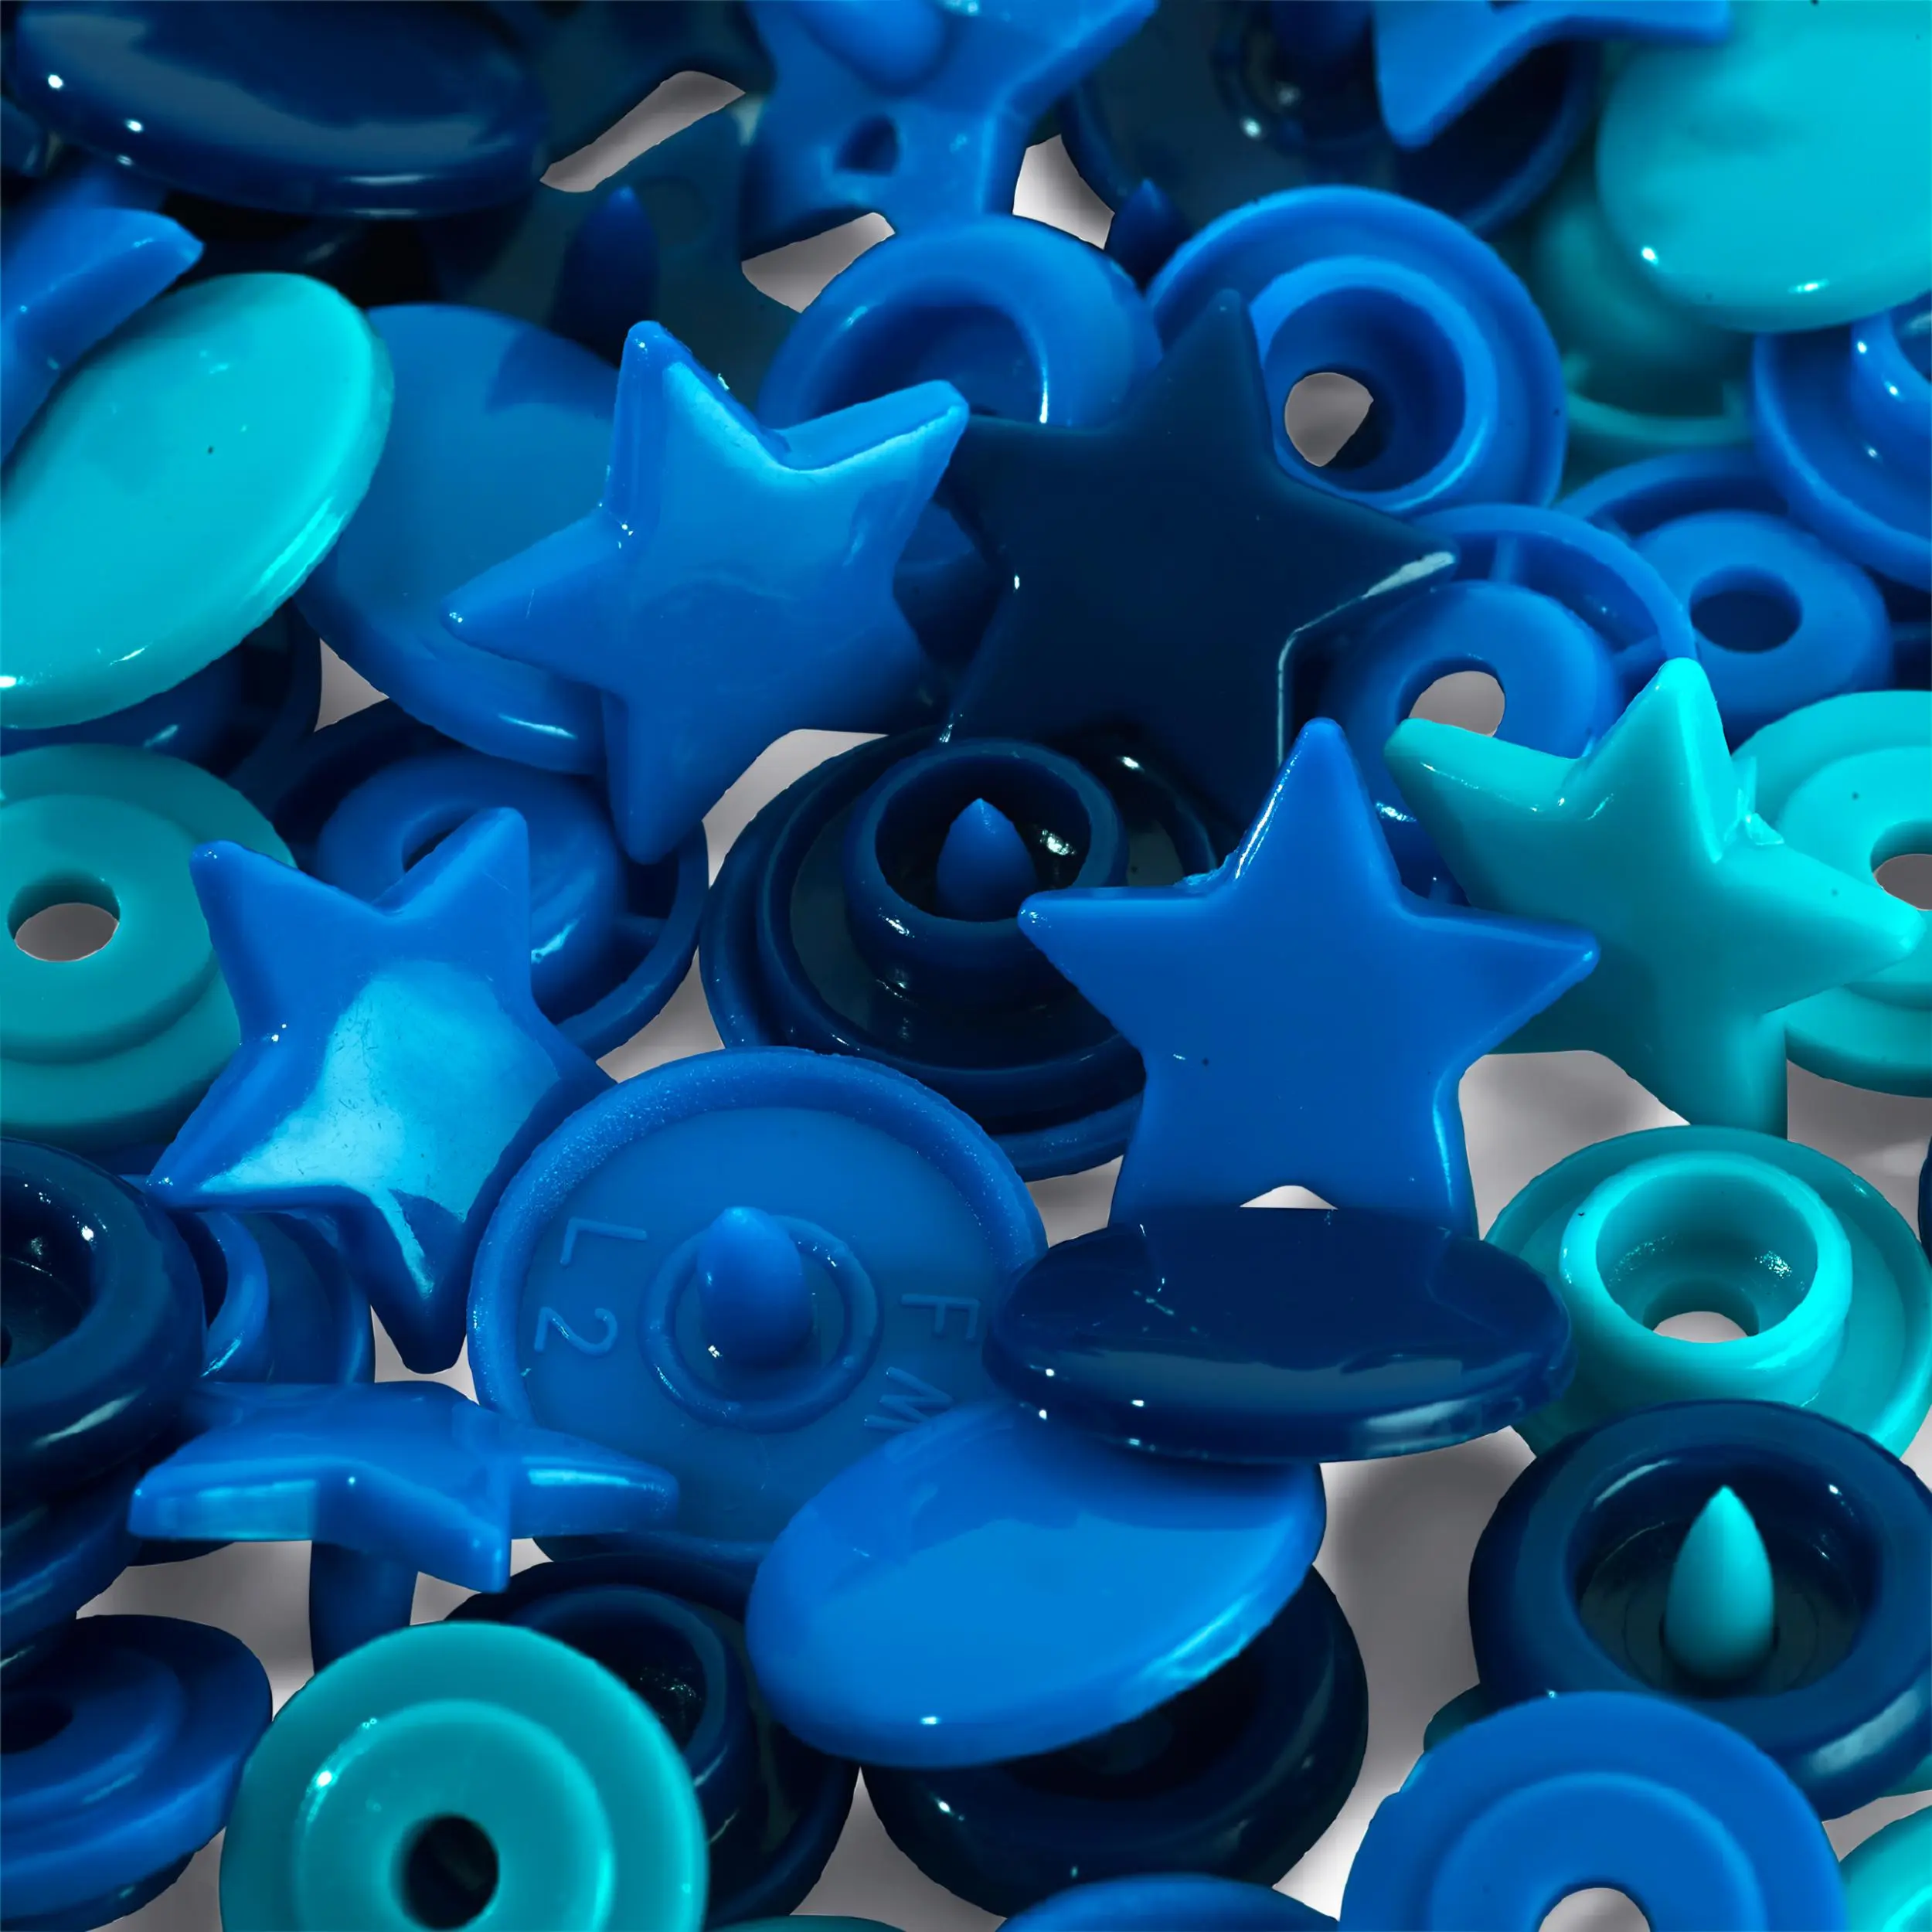 393060 Кнопки Color, зірка 12,4мм (синього, бірюзового і чорнильного кольору), Prym Love